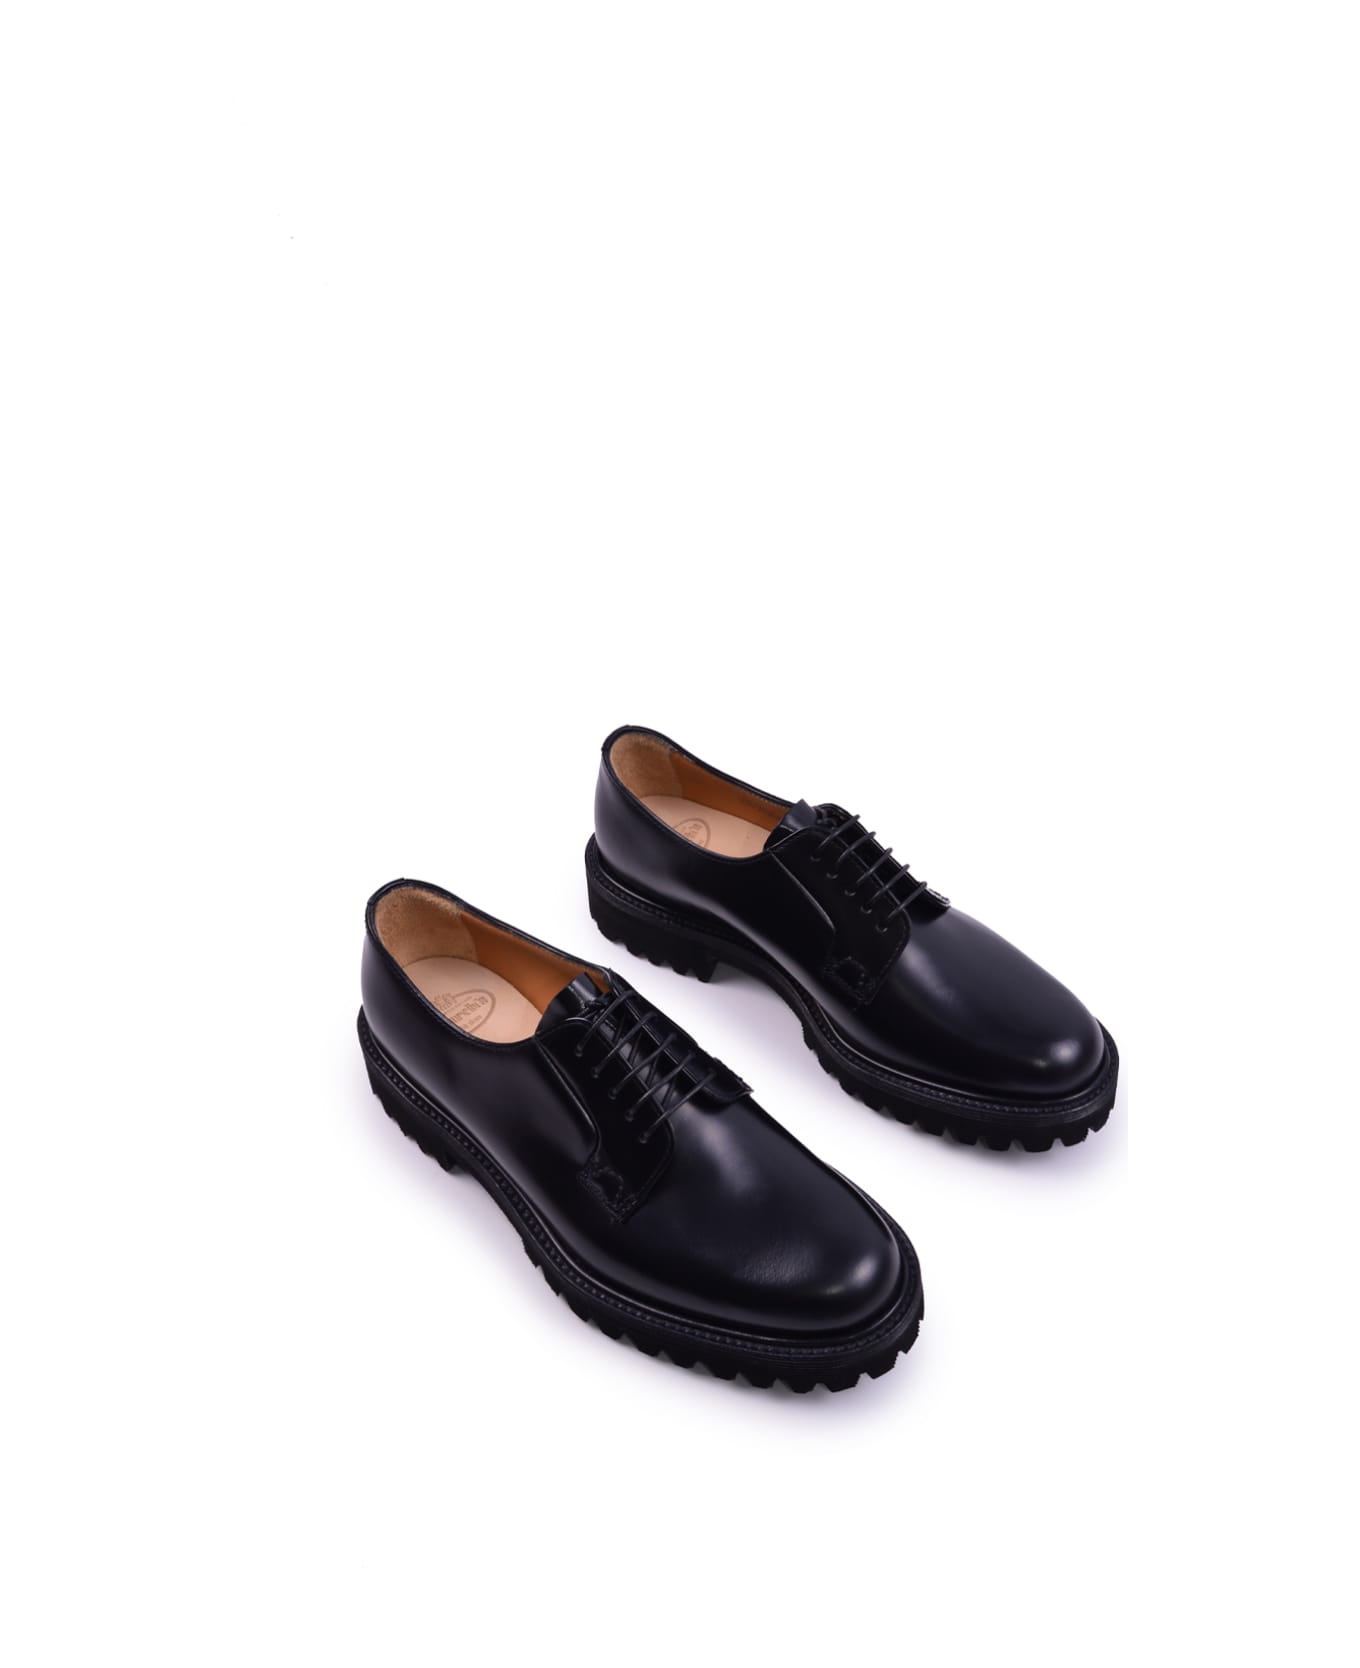 Church's Rois Calfskin Derby Shoe - Black フラットシューズ